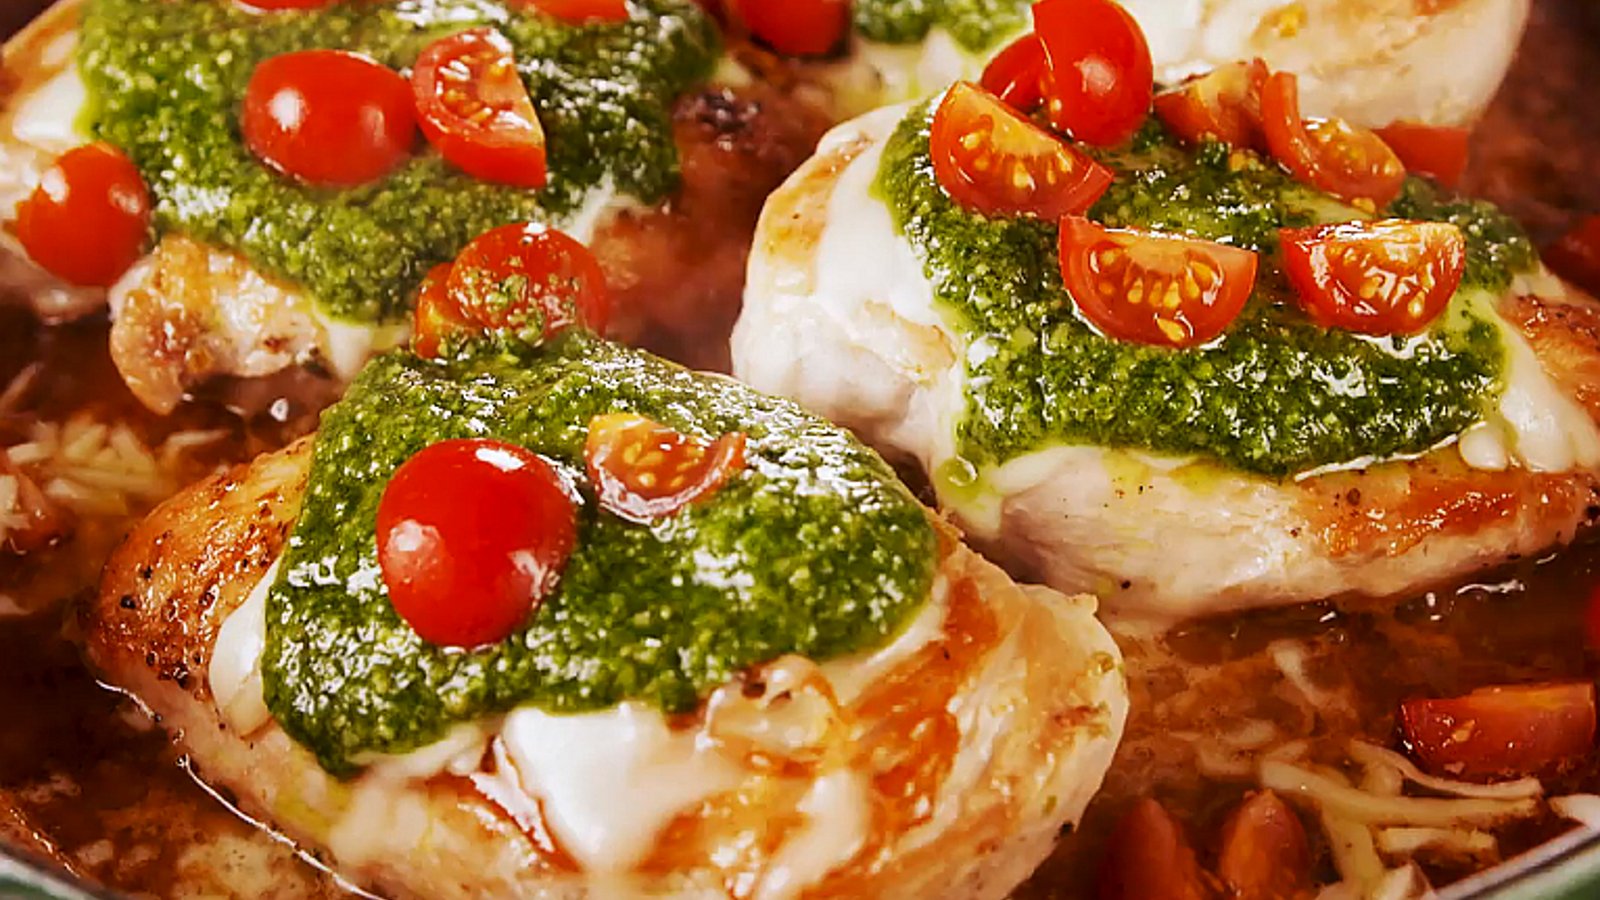 Poulet margherita inspiré d'une recette traditionnelle italienne